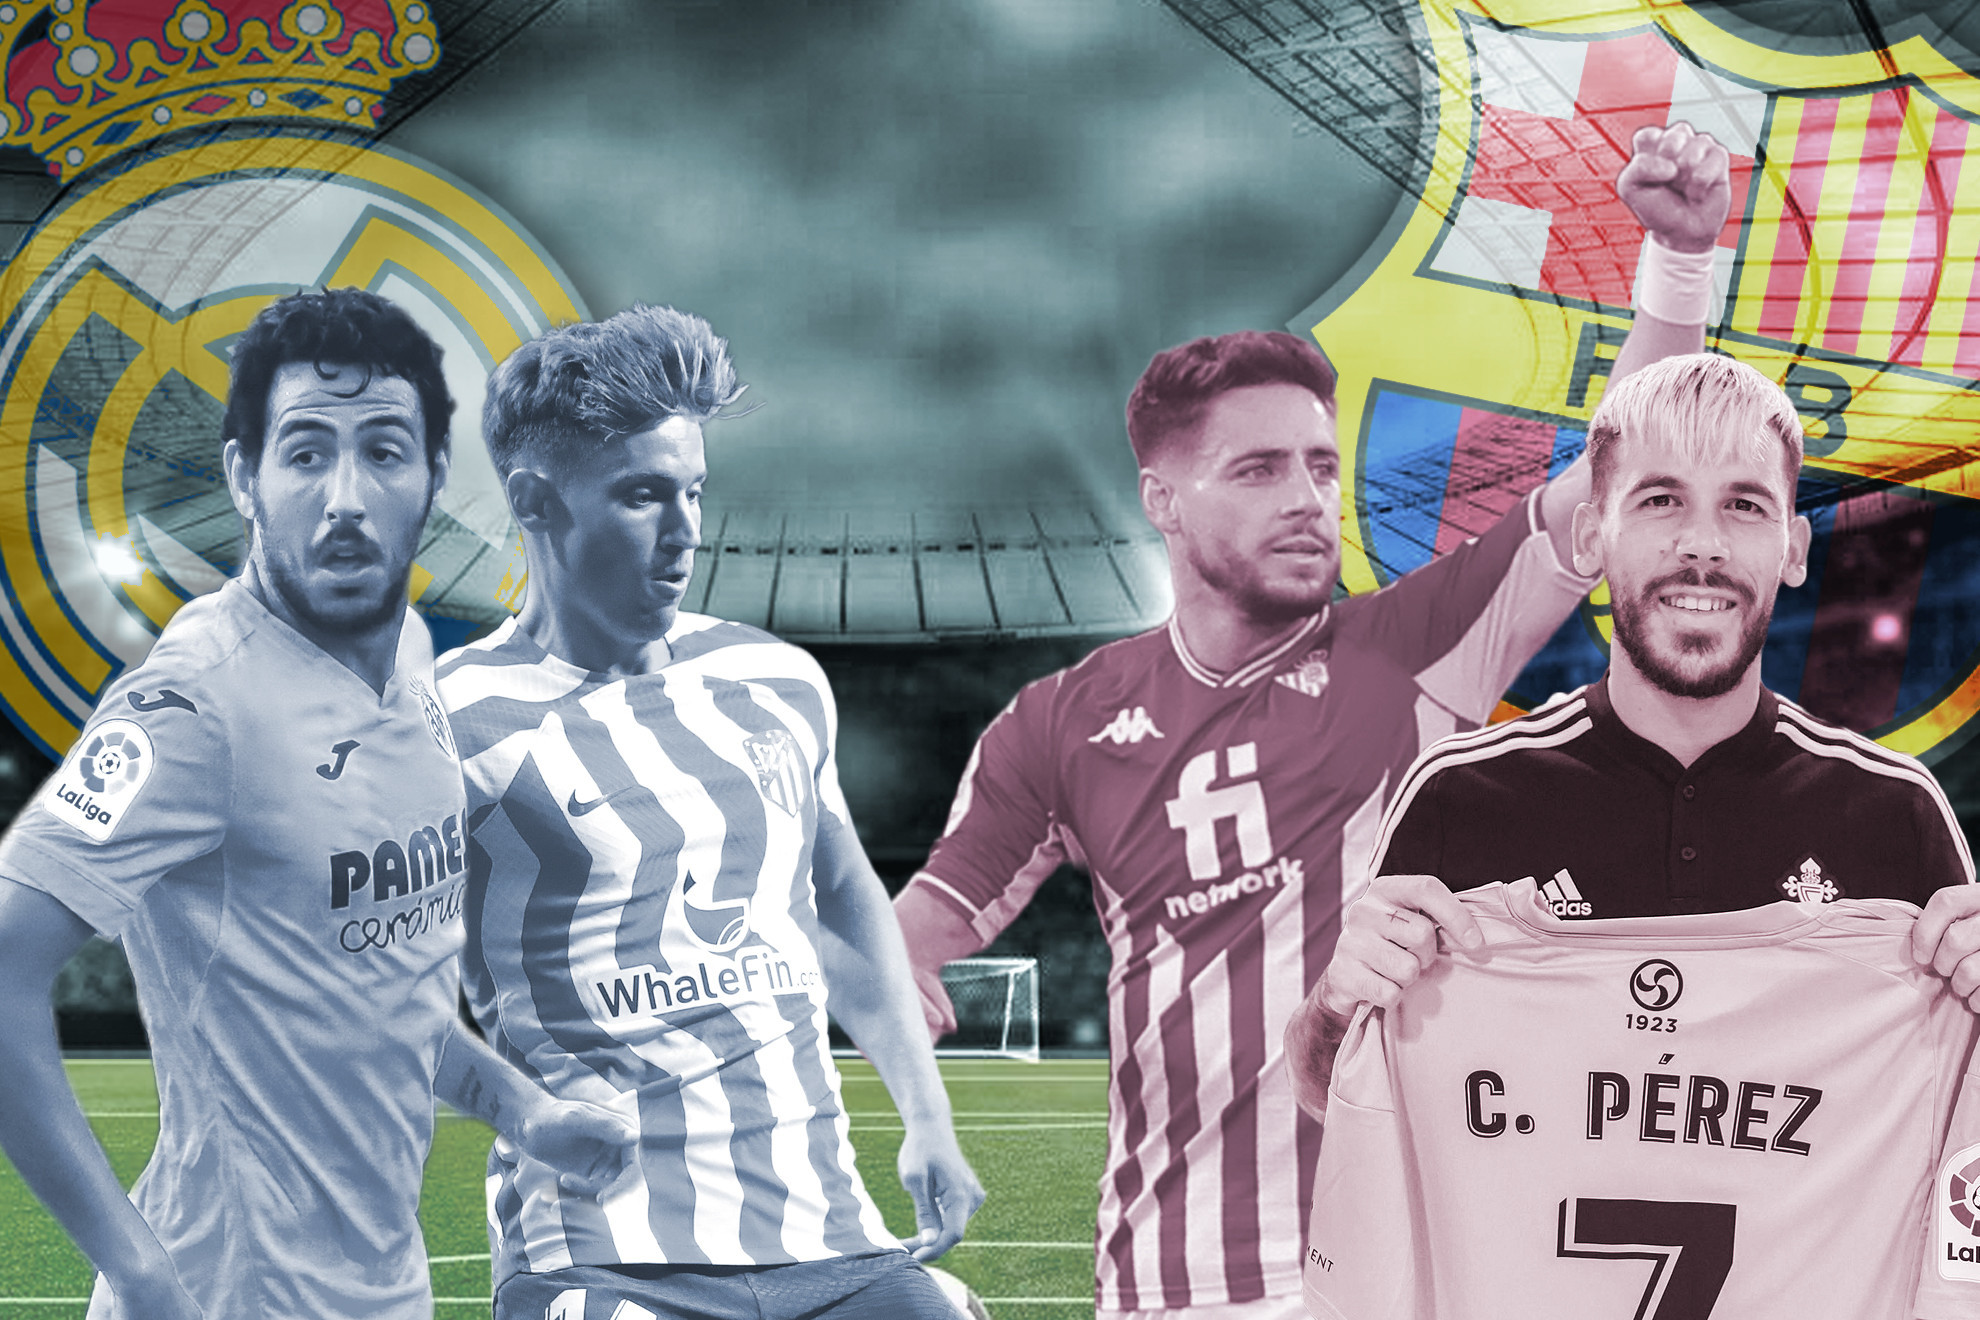 El Clásico de las canteras: ¿Real Madrid o Barça? ¿Qué club tiene más canteranos en equipos de LaLiga?